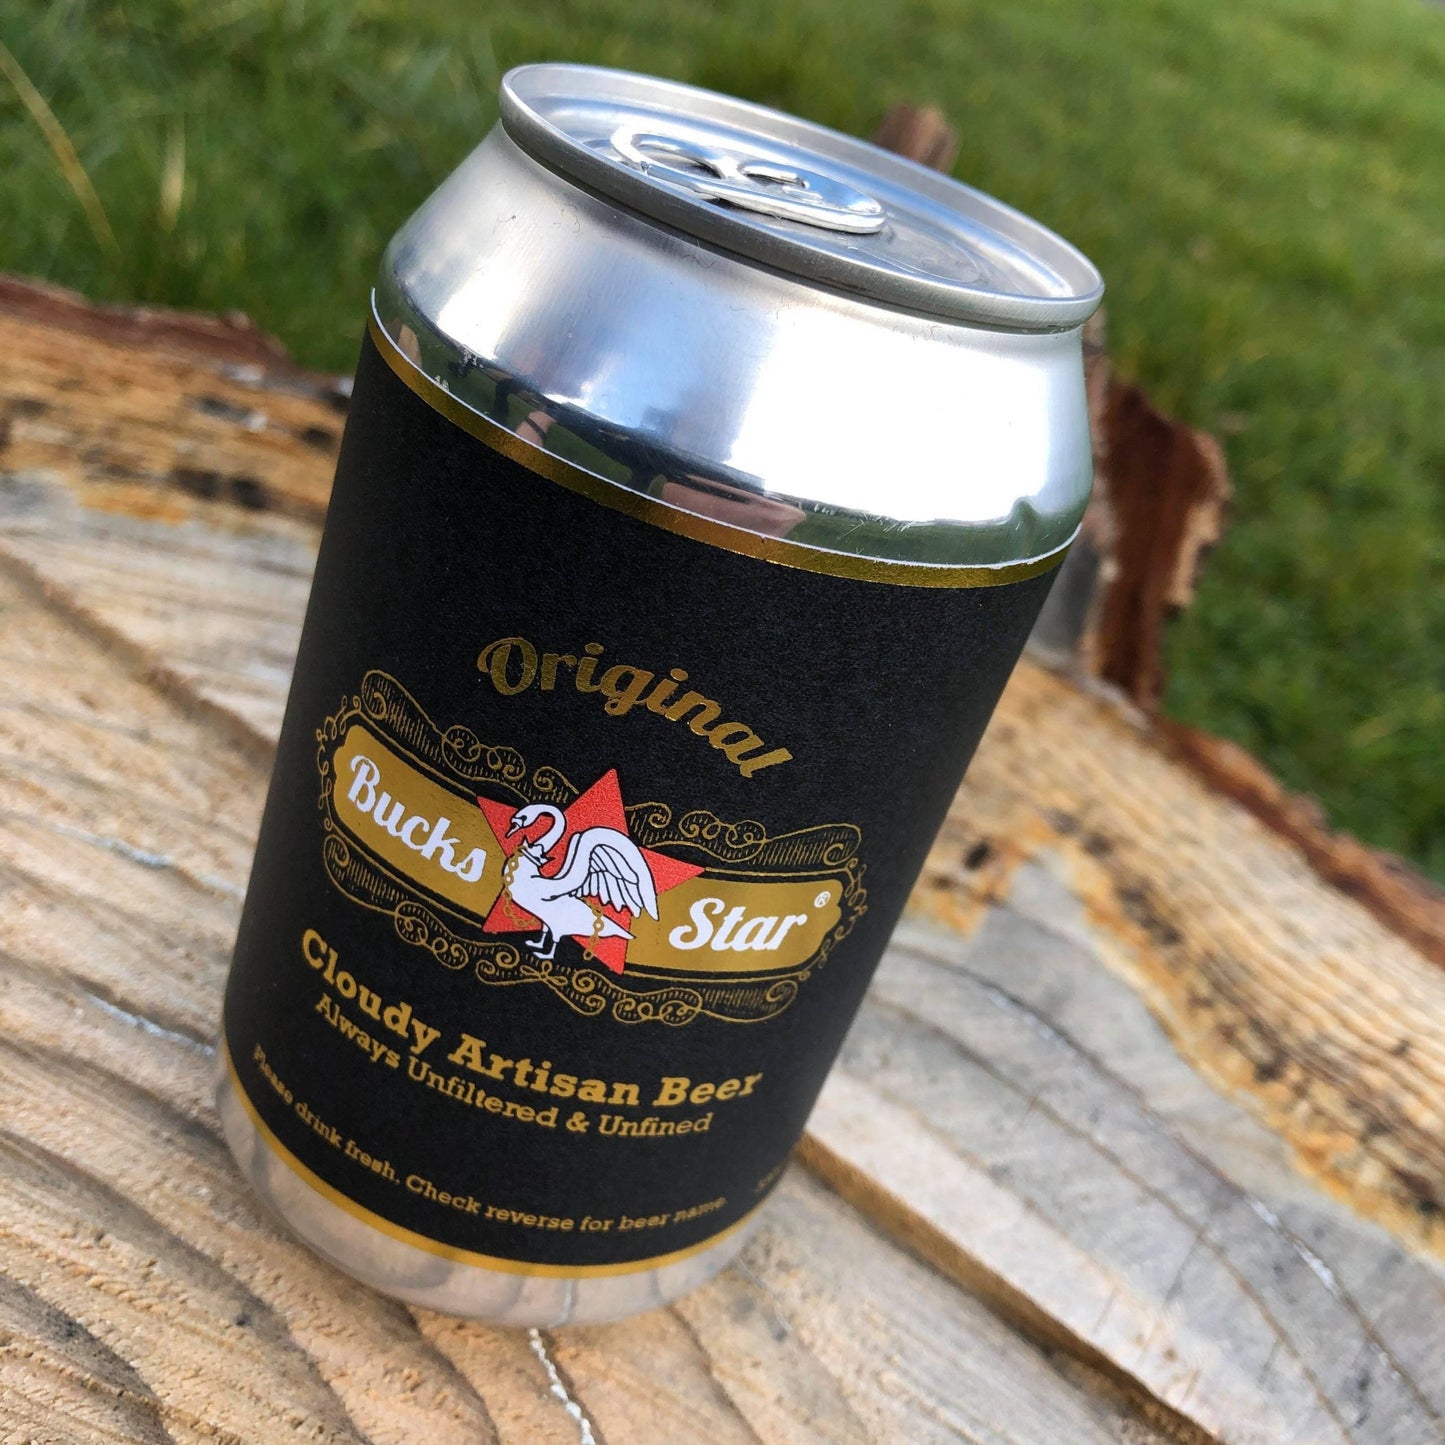 Bucks Star Beer, 'Steenbrugge' Belgian Ale 330ml, 4.8%